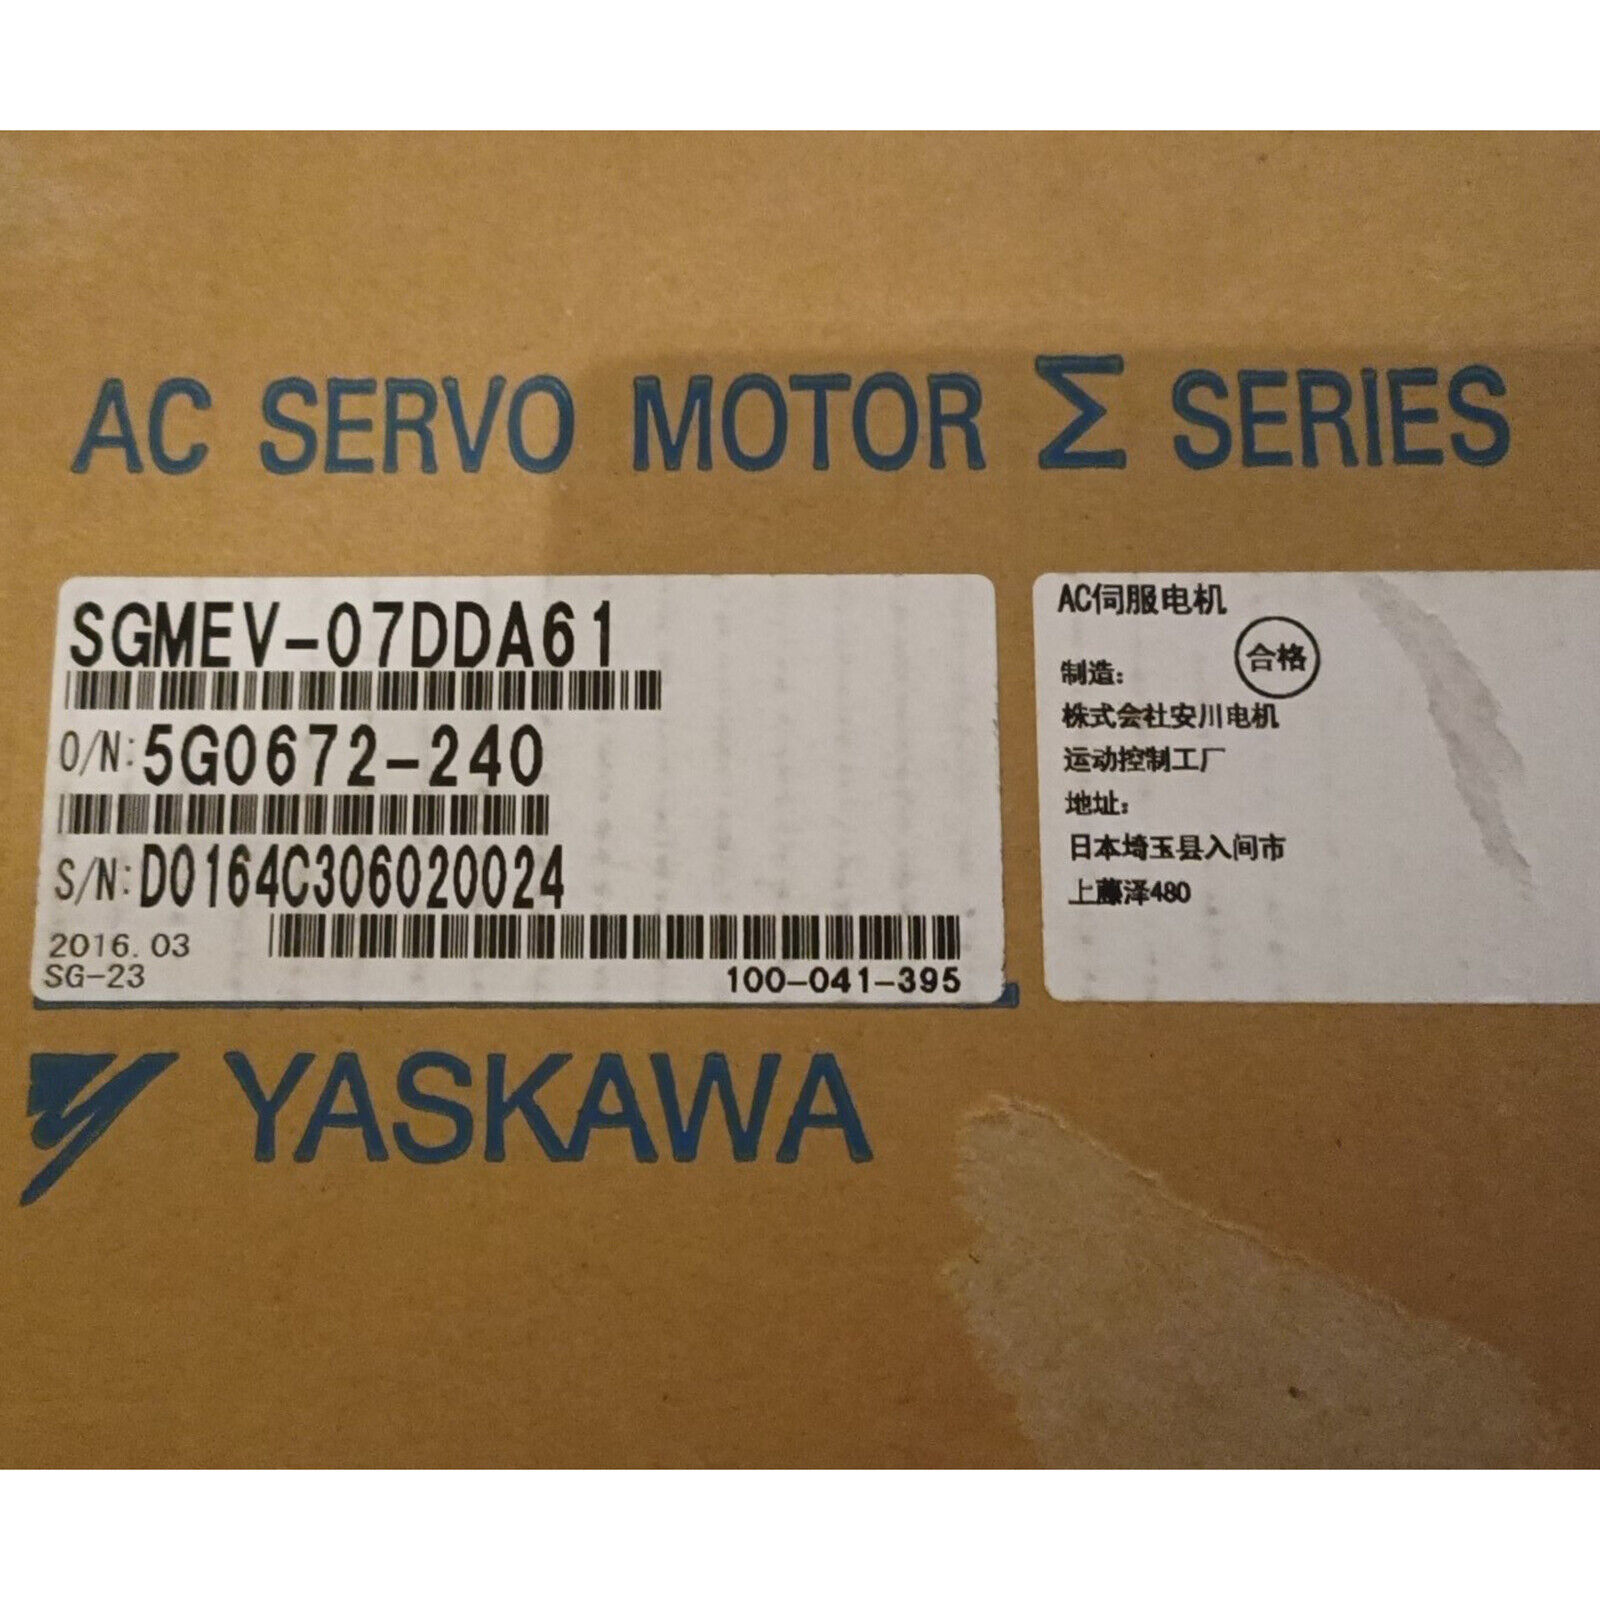 New In Box Yaskawa SGMEV-07DDA61 Servo Motor SGMEV07DDA61 US Stock